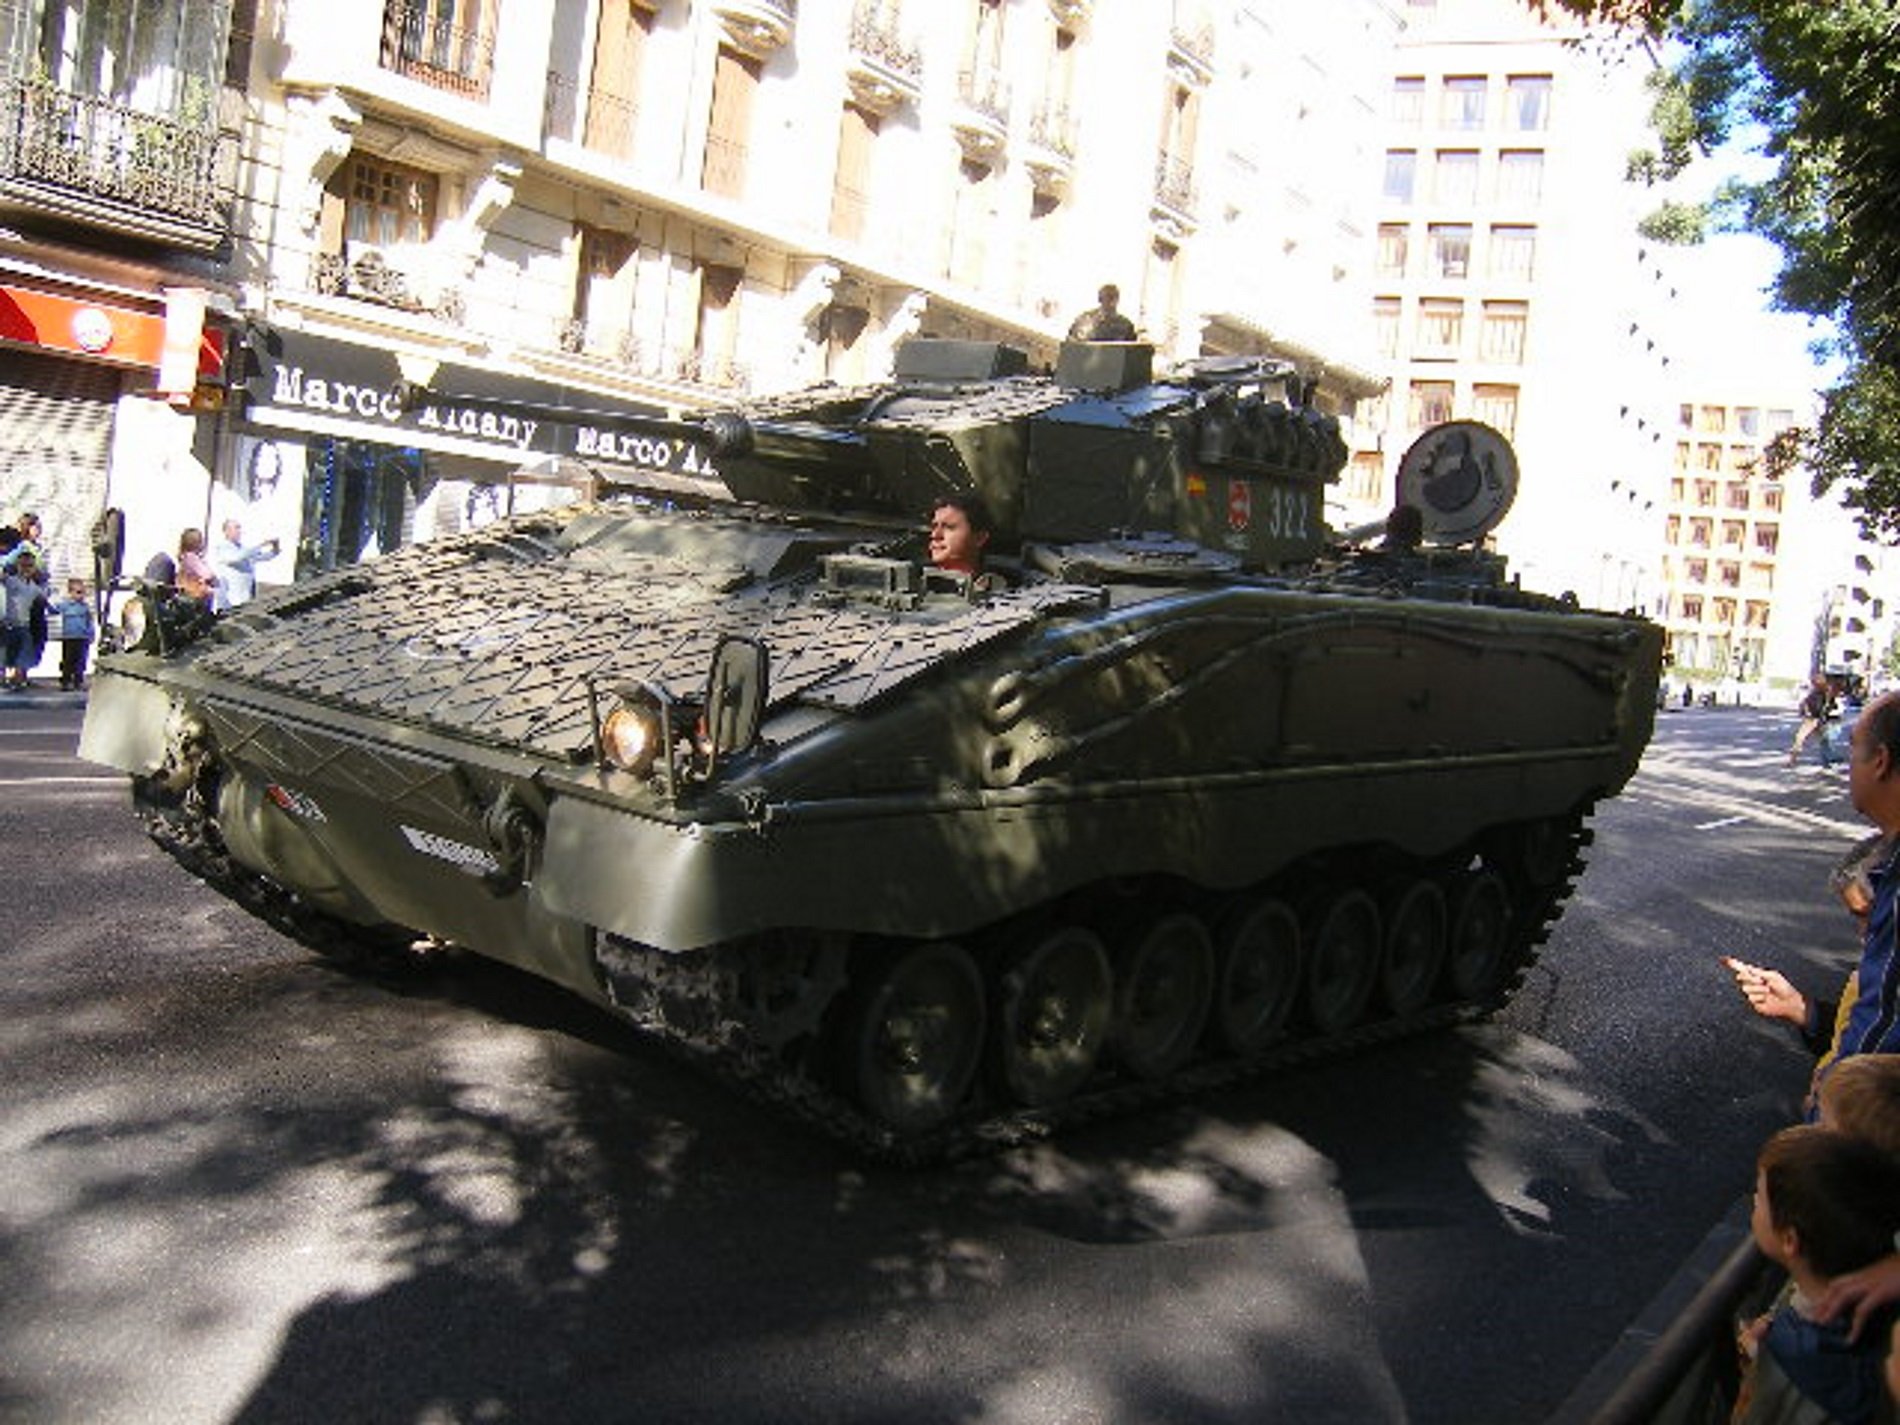 L'Exèrcit envia tancs a Catalunya en ple procés